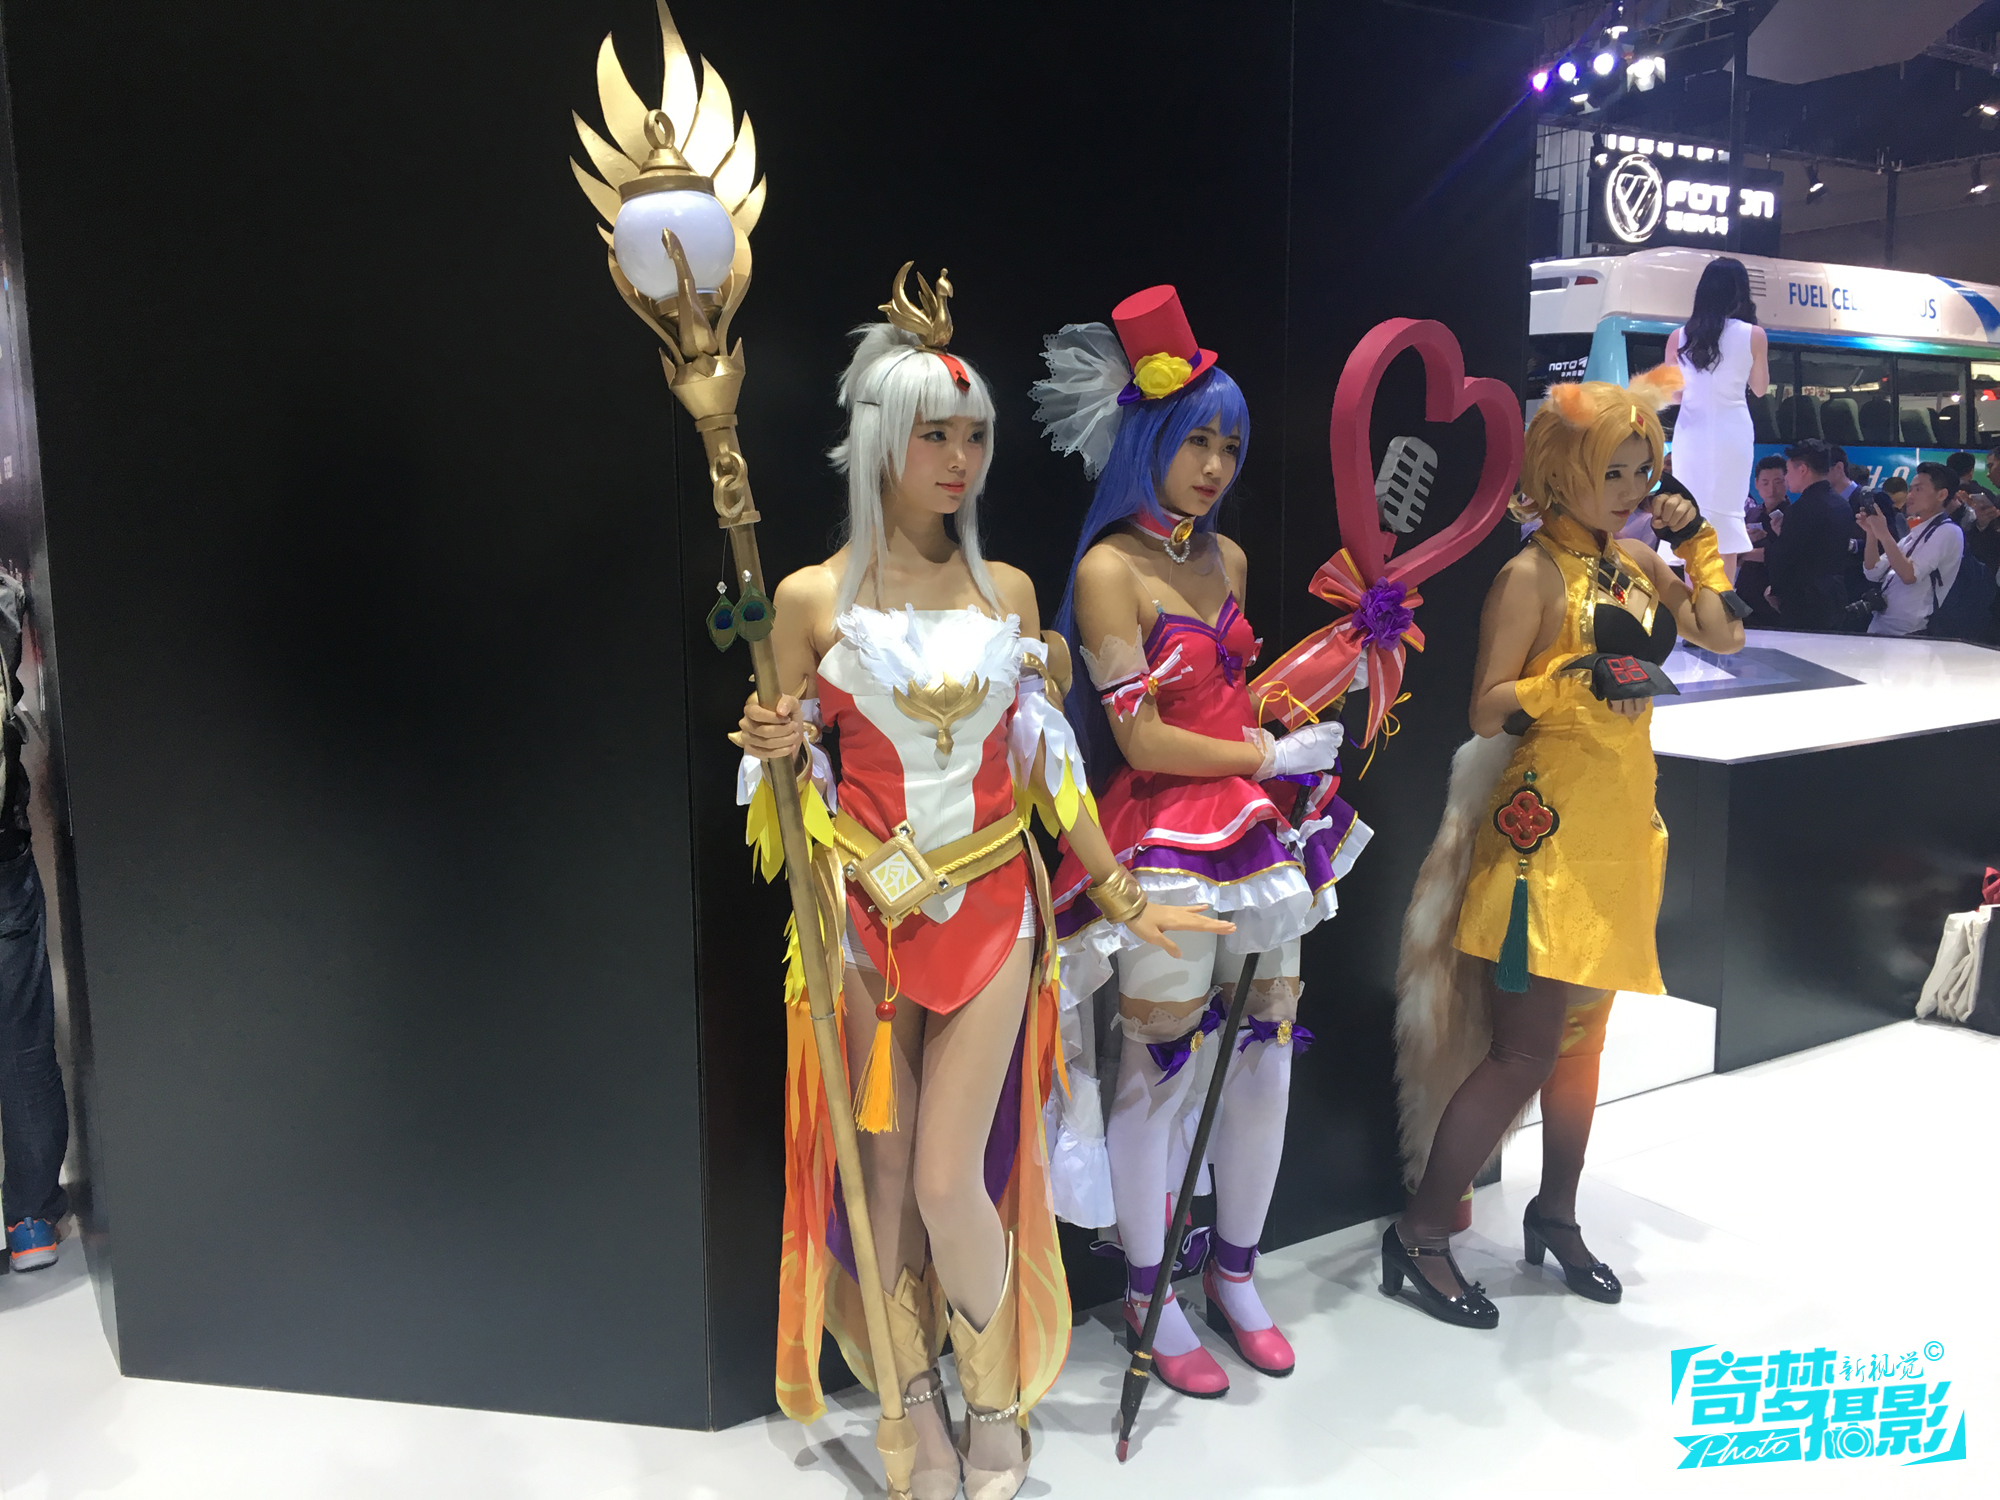 上海车展融入cosplay主题元素,角色扮演艳丽夺目